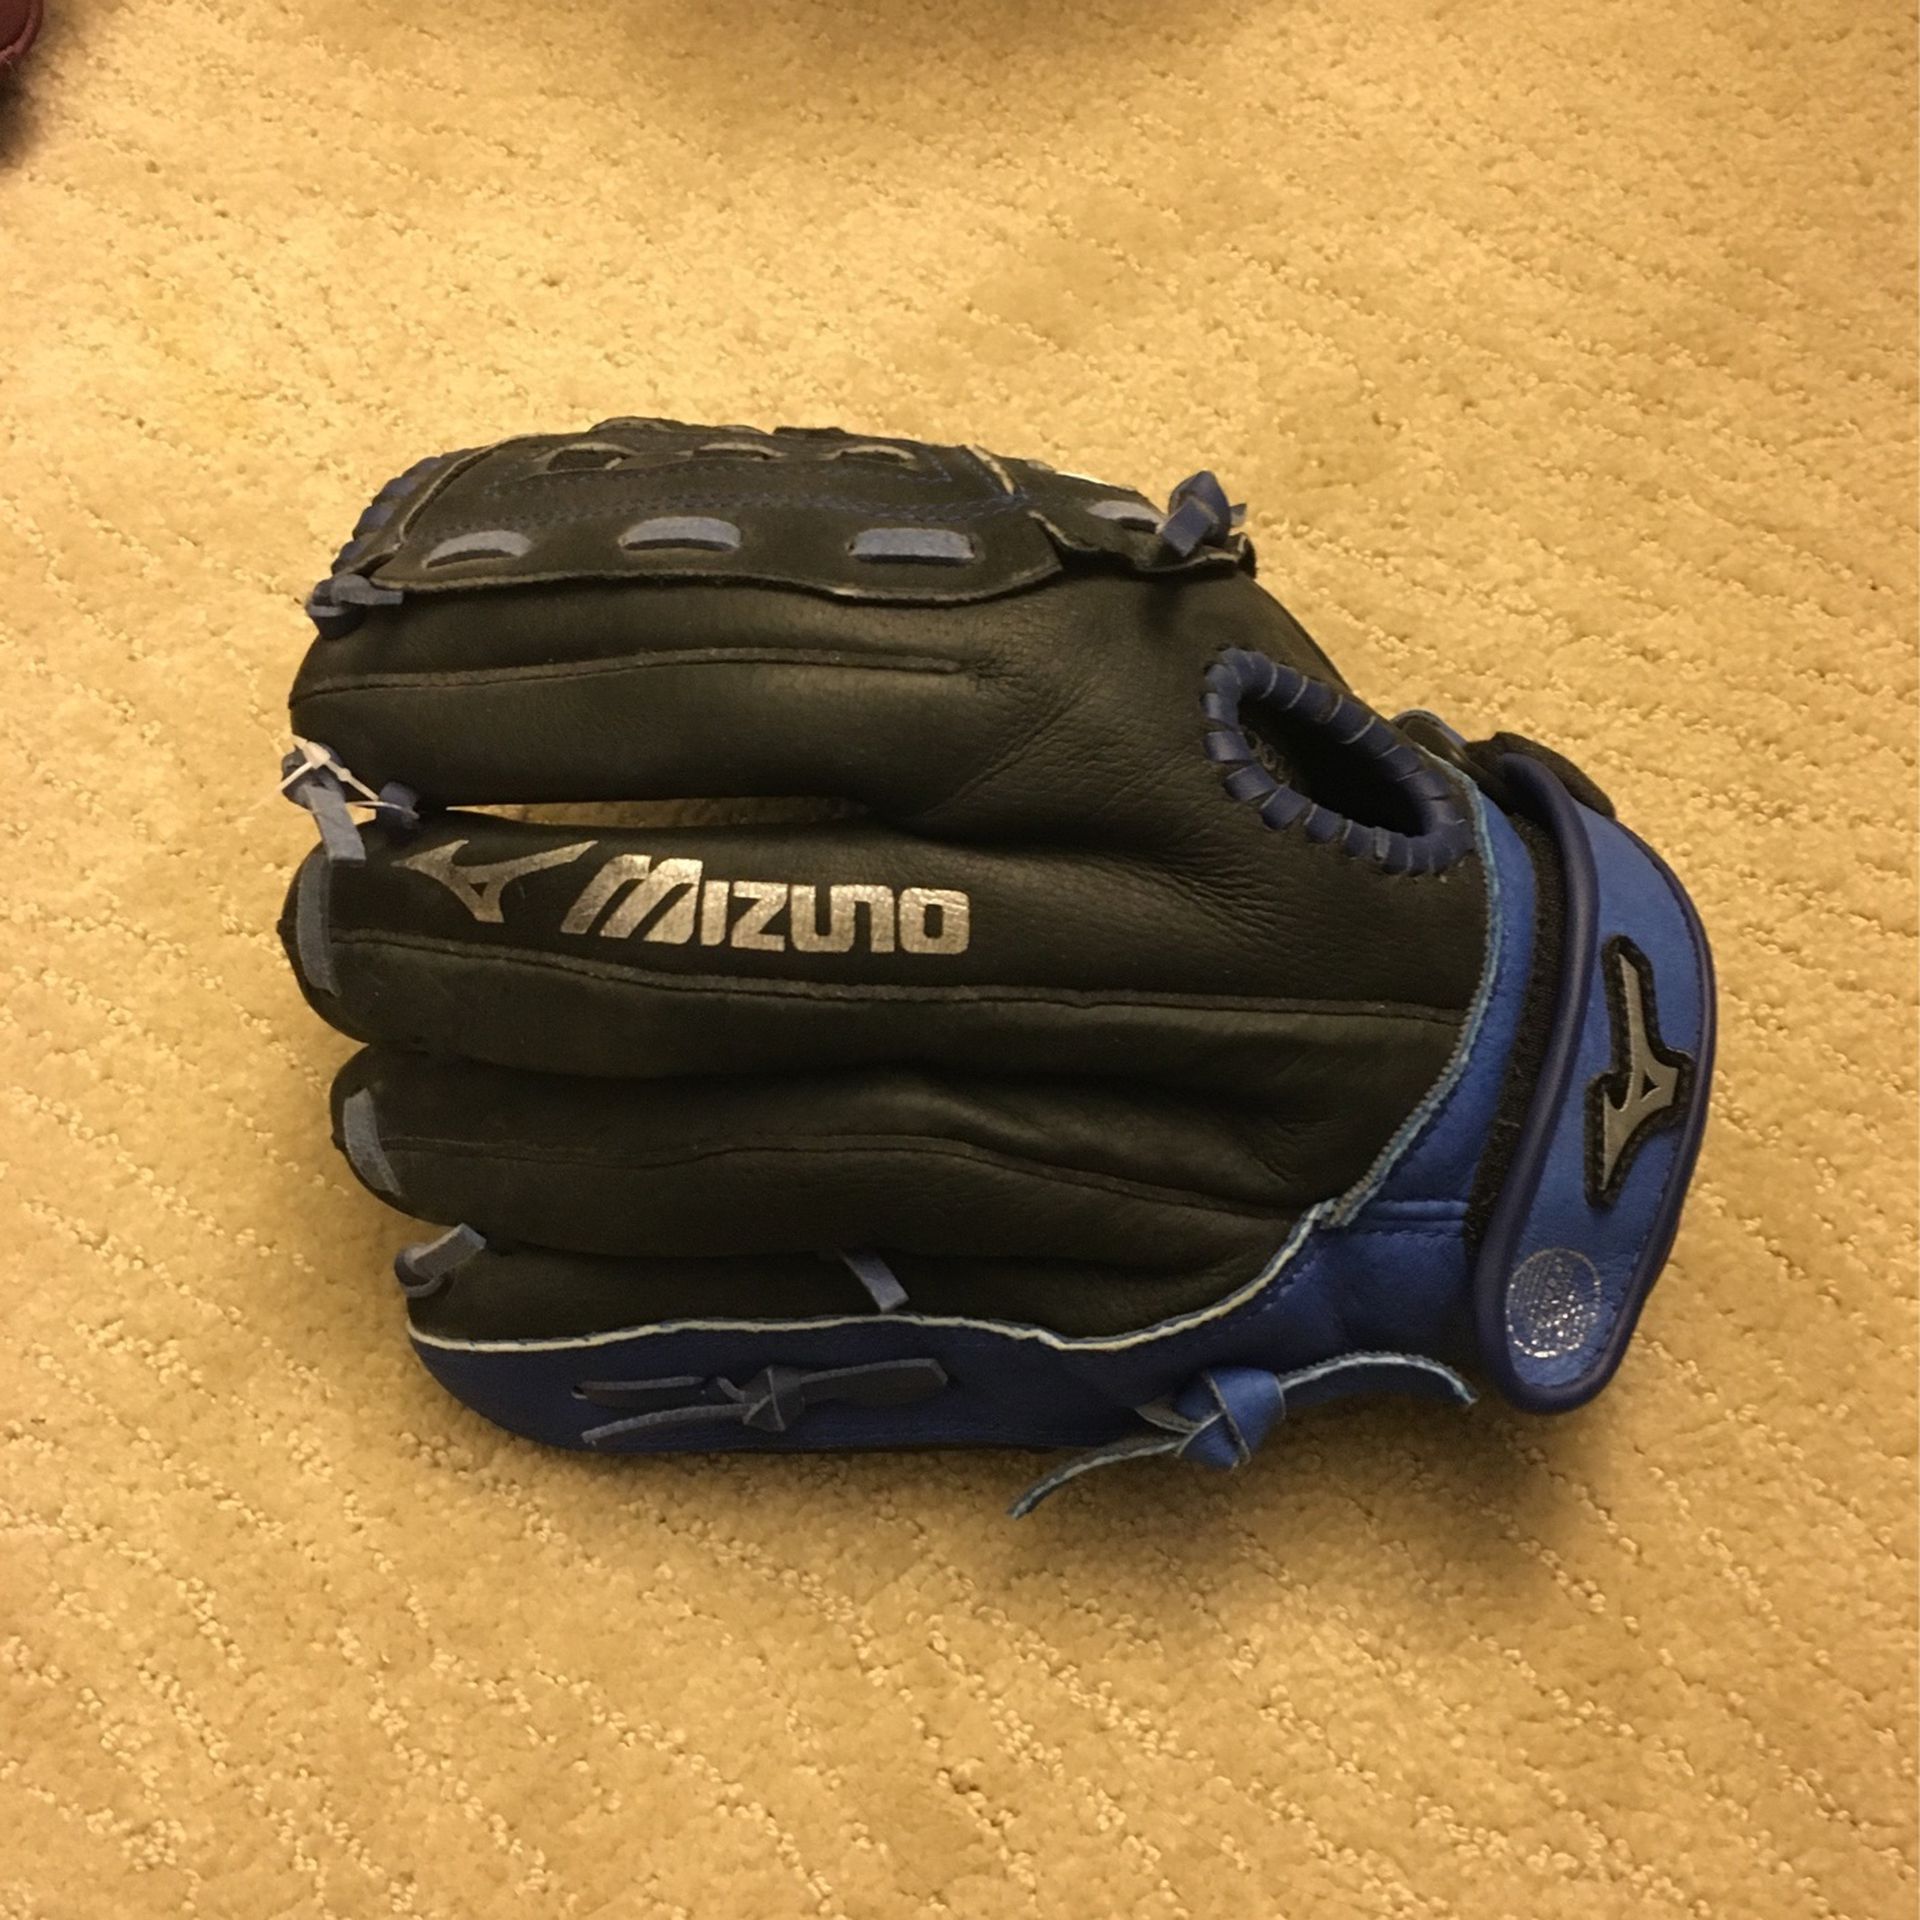 Mizuno Womens Softball Glove